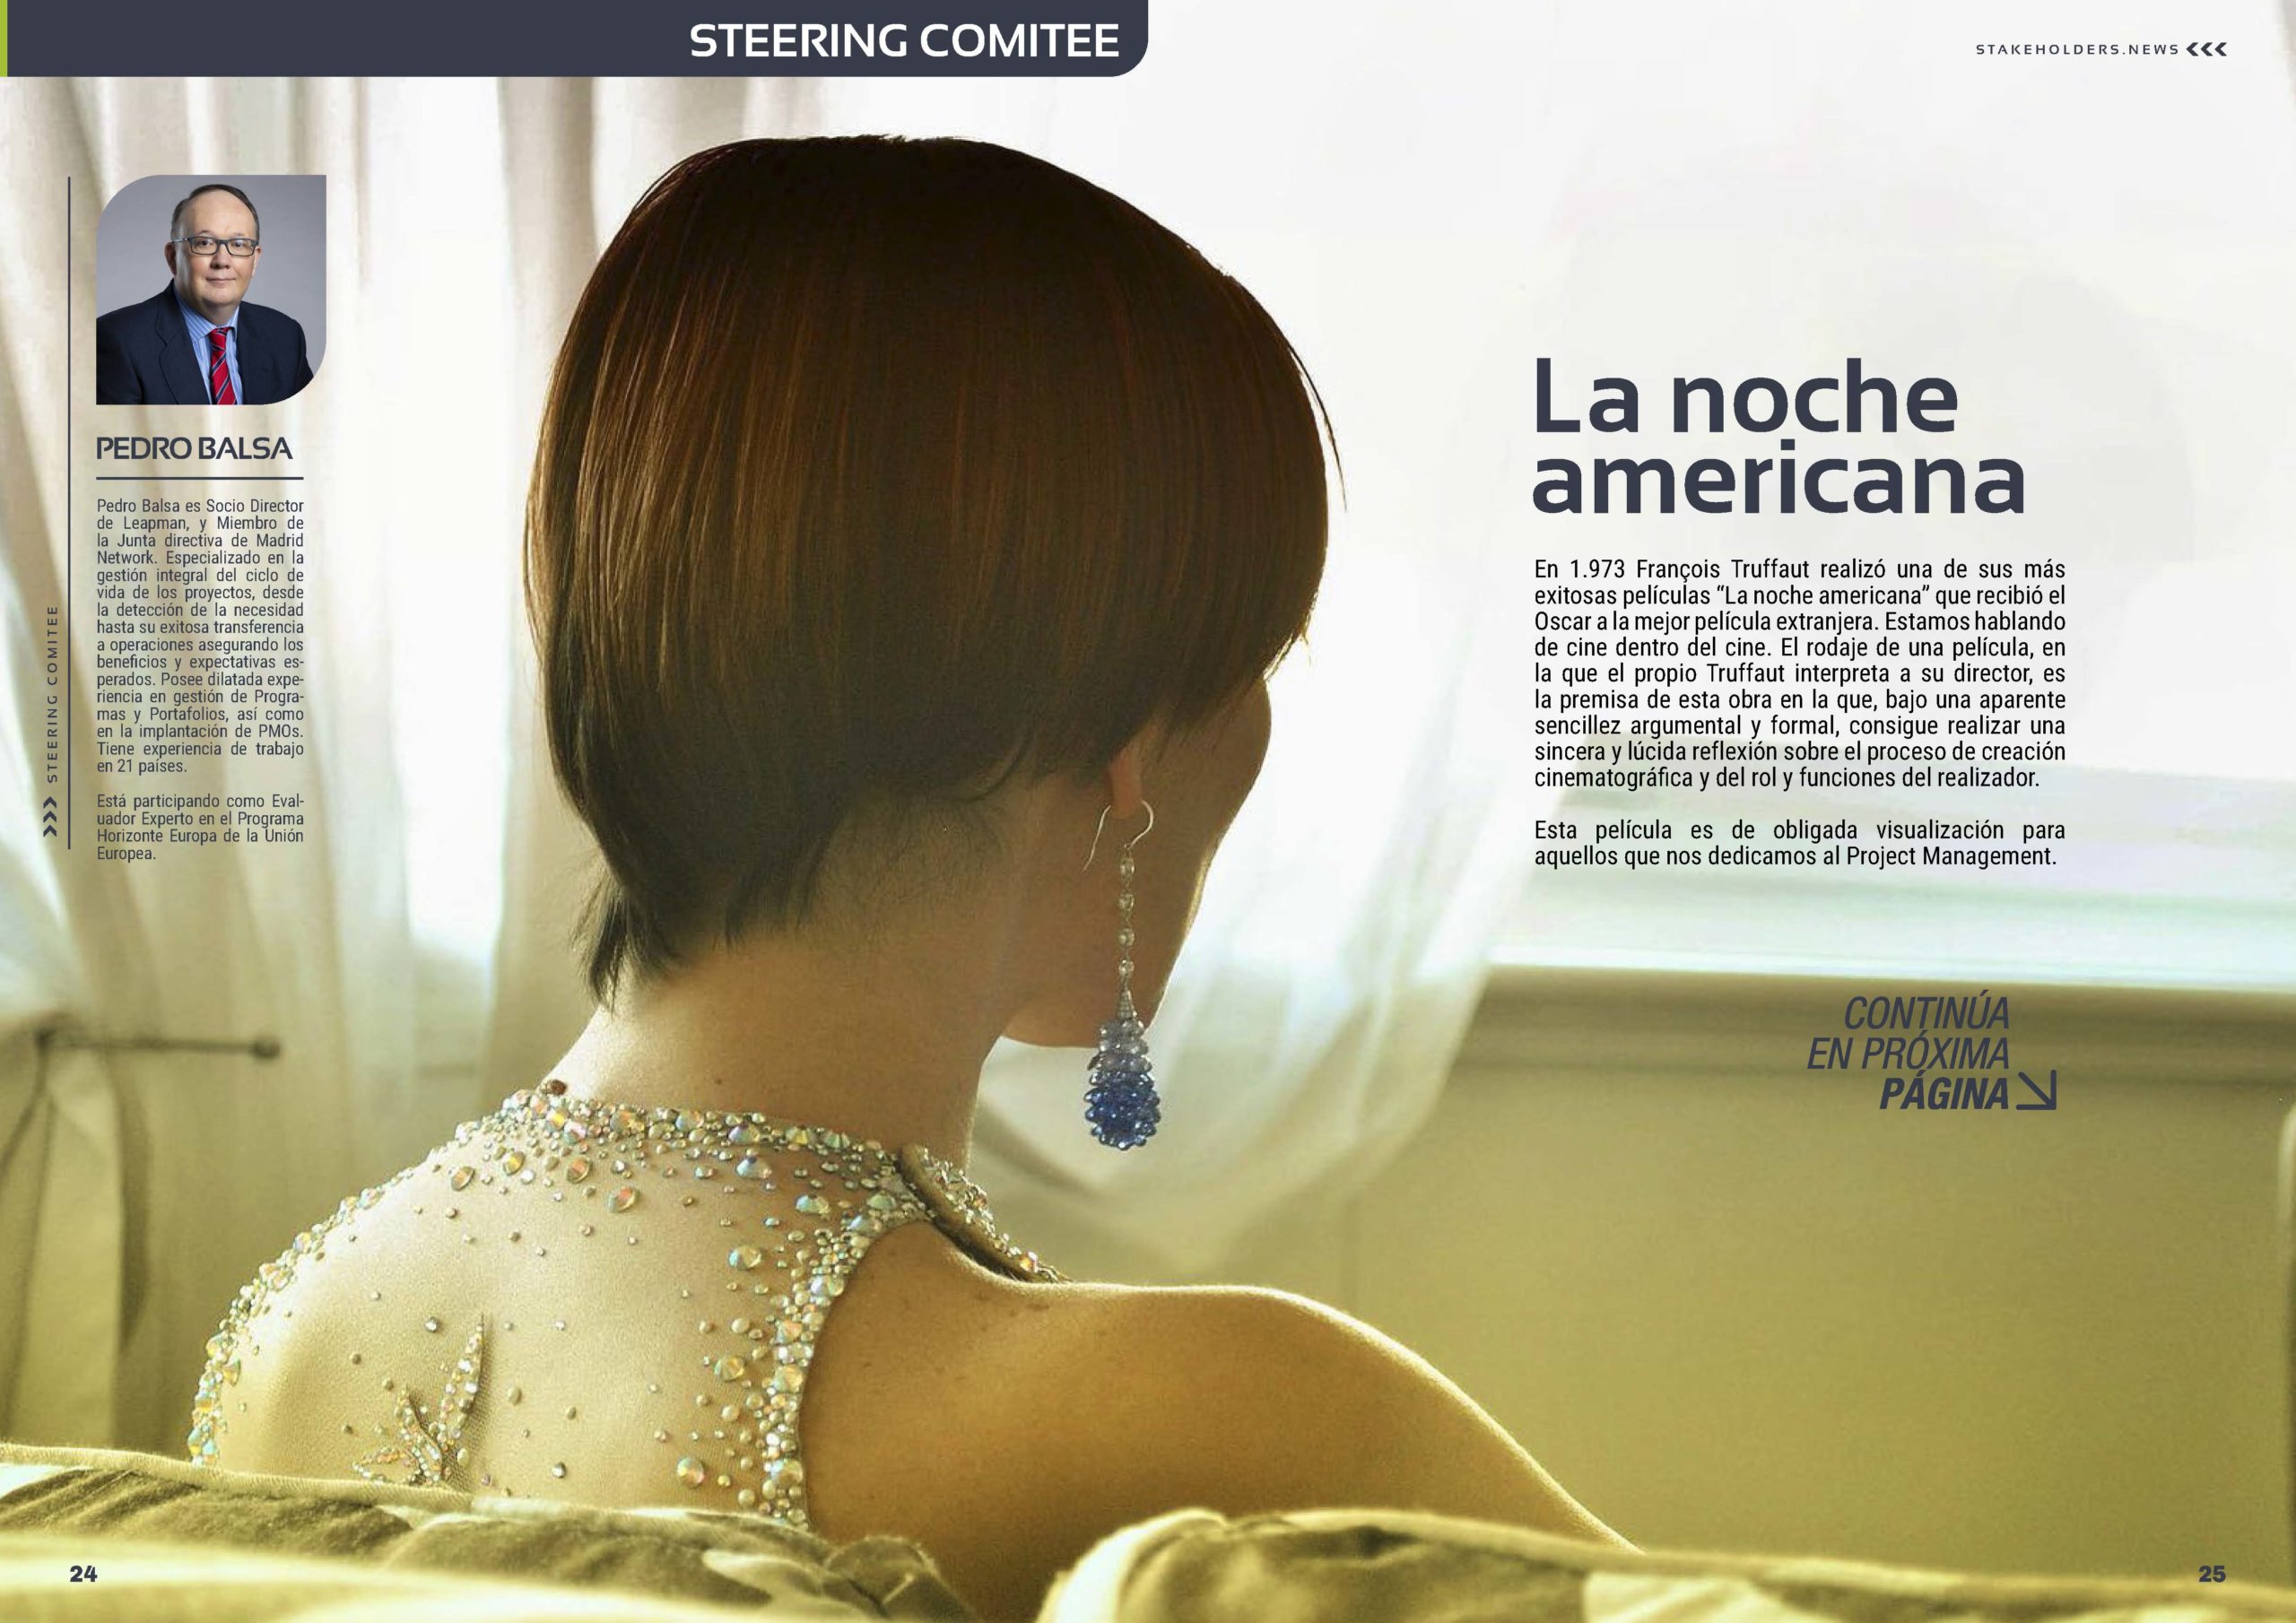 Artículo "La Noche americana" de Pedro Balsa en la Sección "Steering Comitee" de la Revista Stakeholders.news